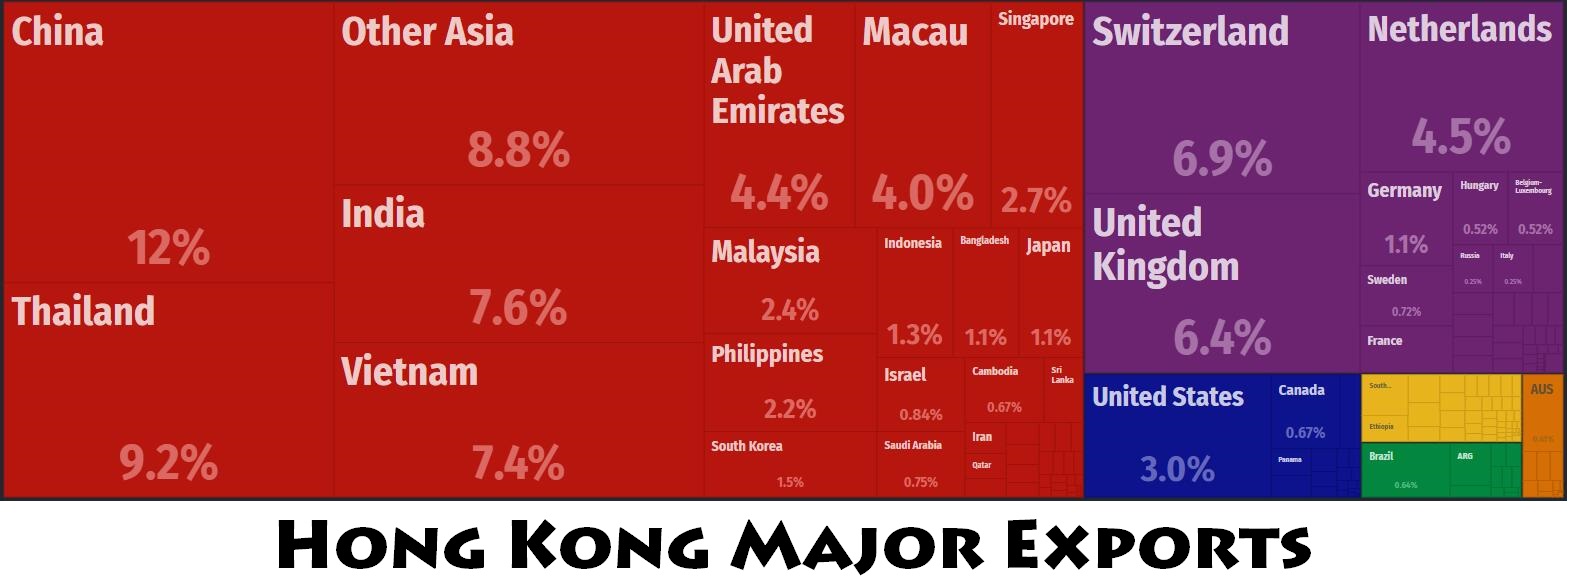 Hong Kong Major Trade Partners